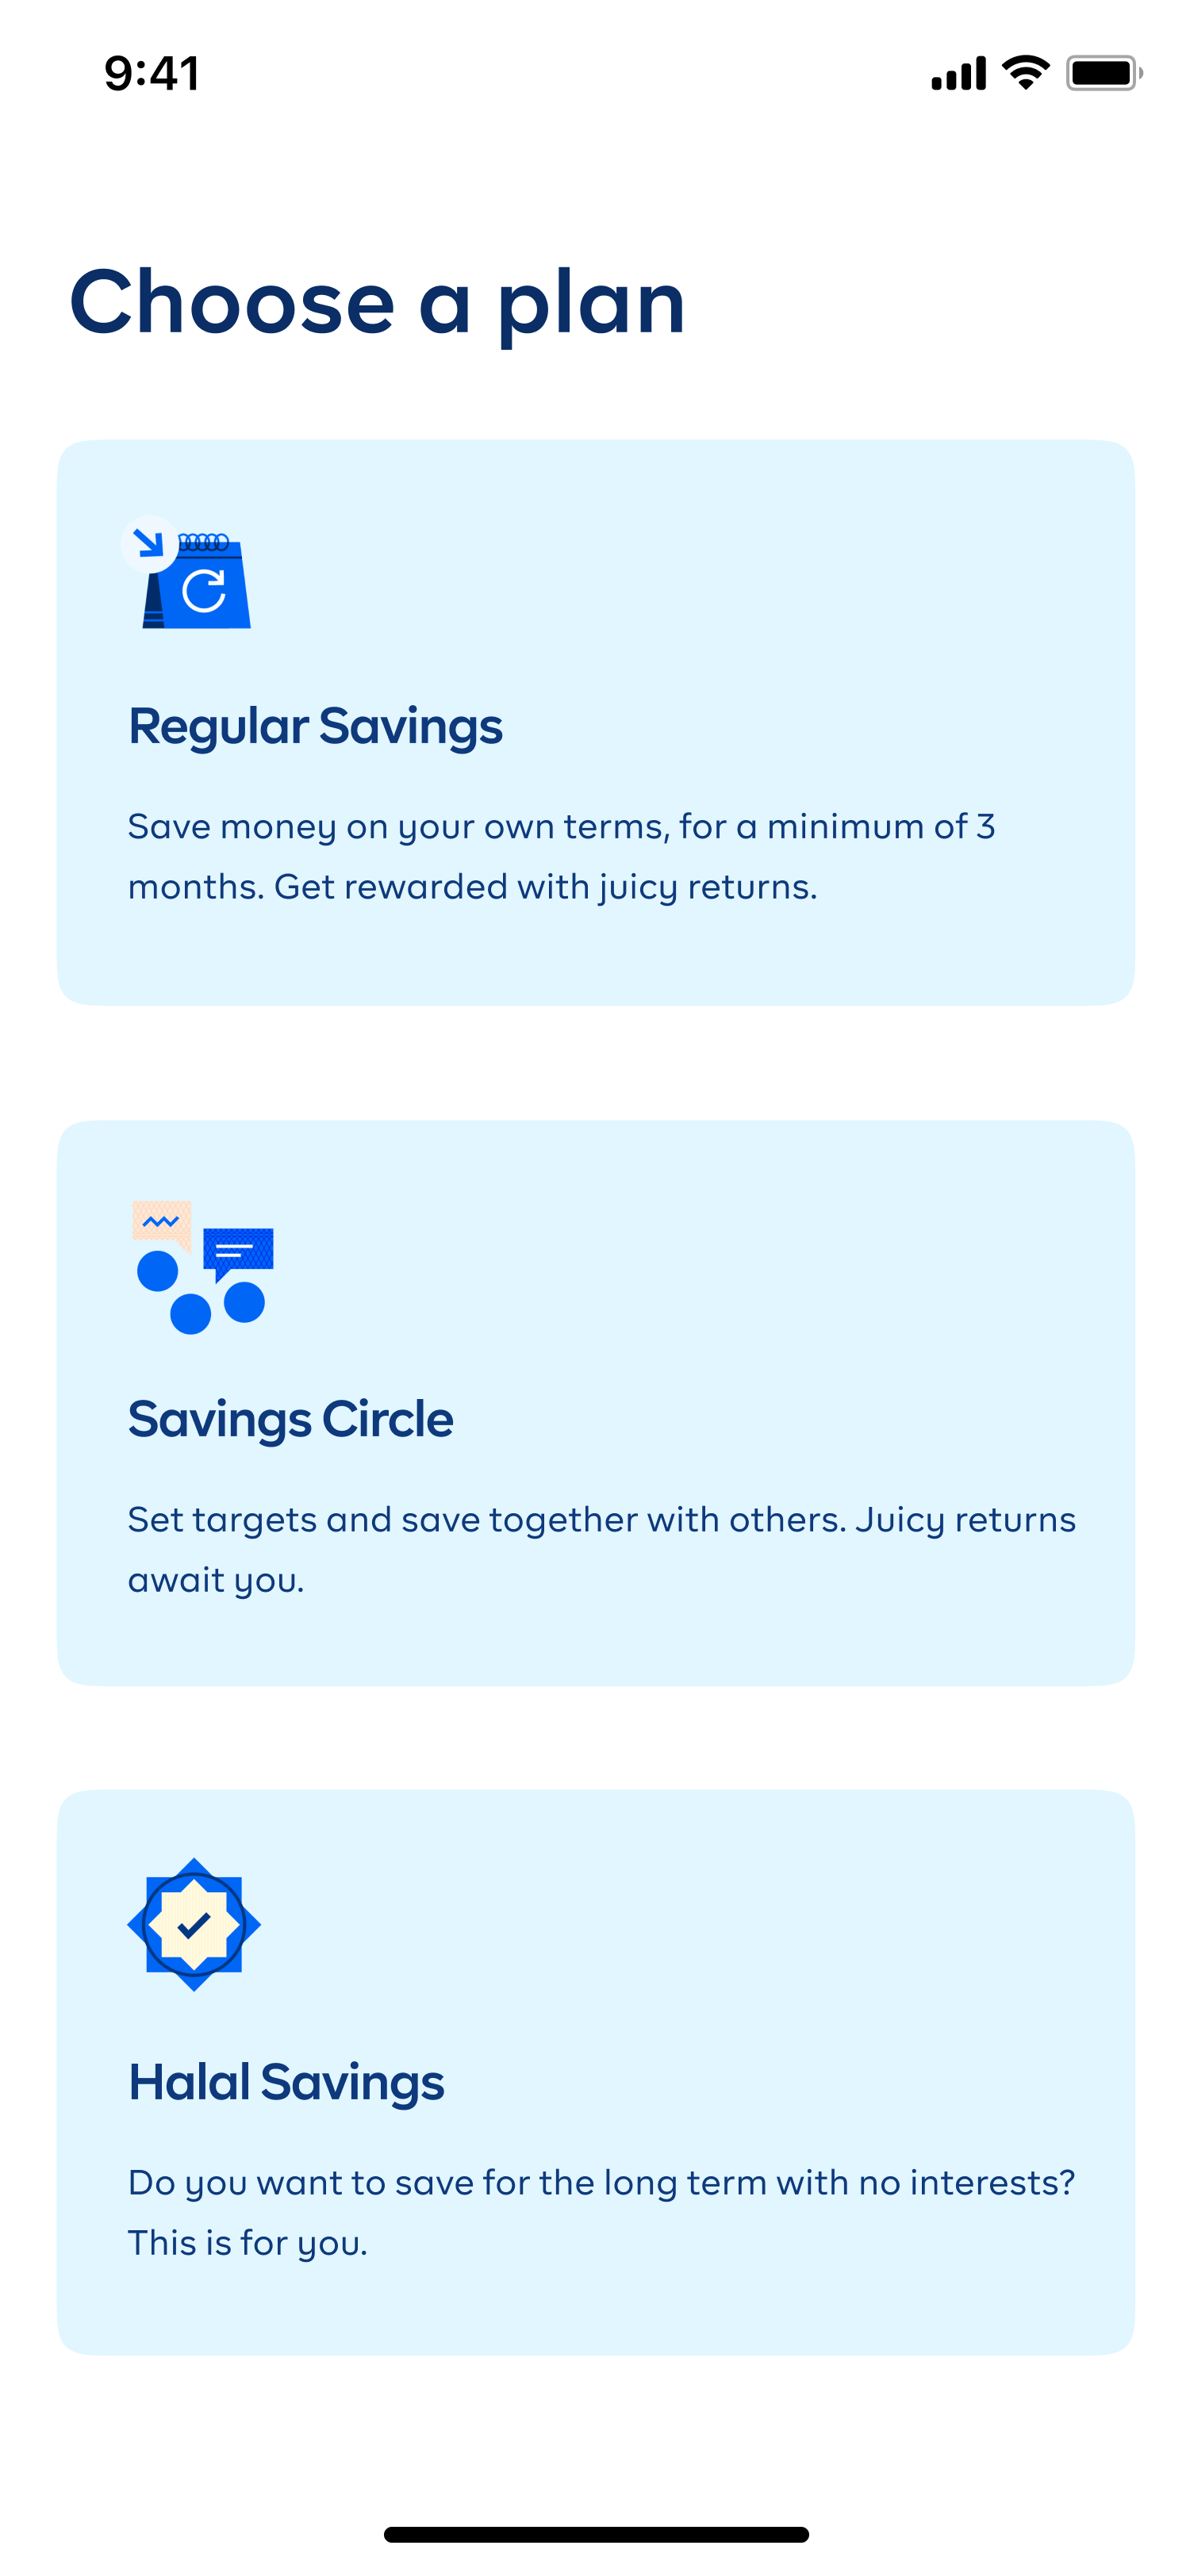 cowrywise app - savings plans